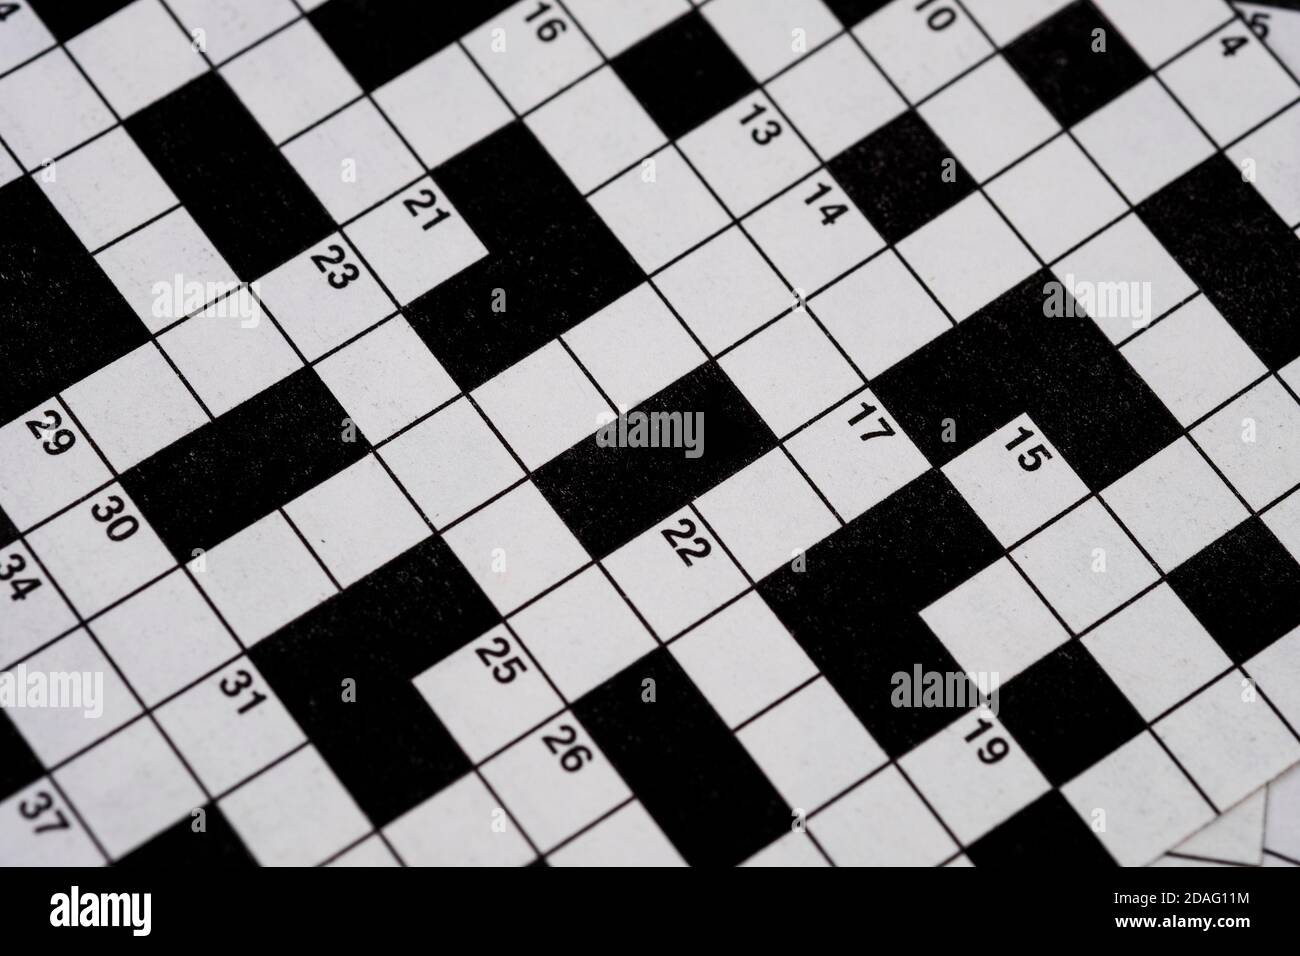 image d'un puzzle classique en mots croisés, avec contraste élevé en noir et blanc Banque D'Images